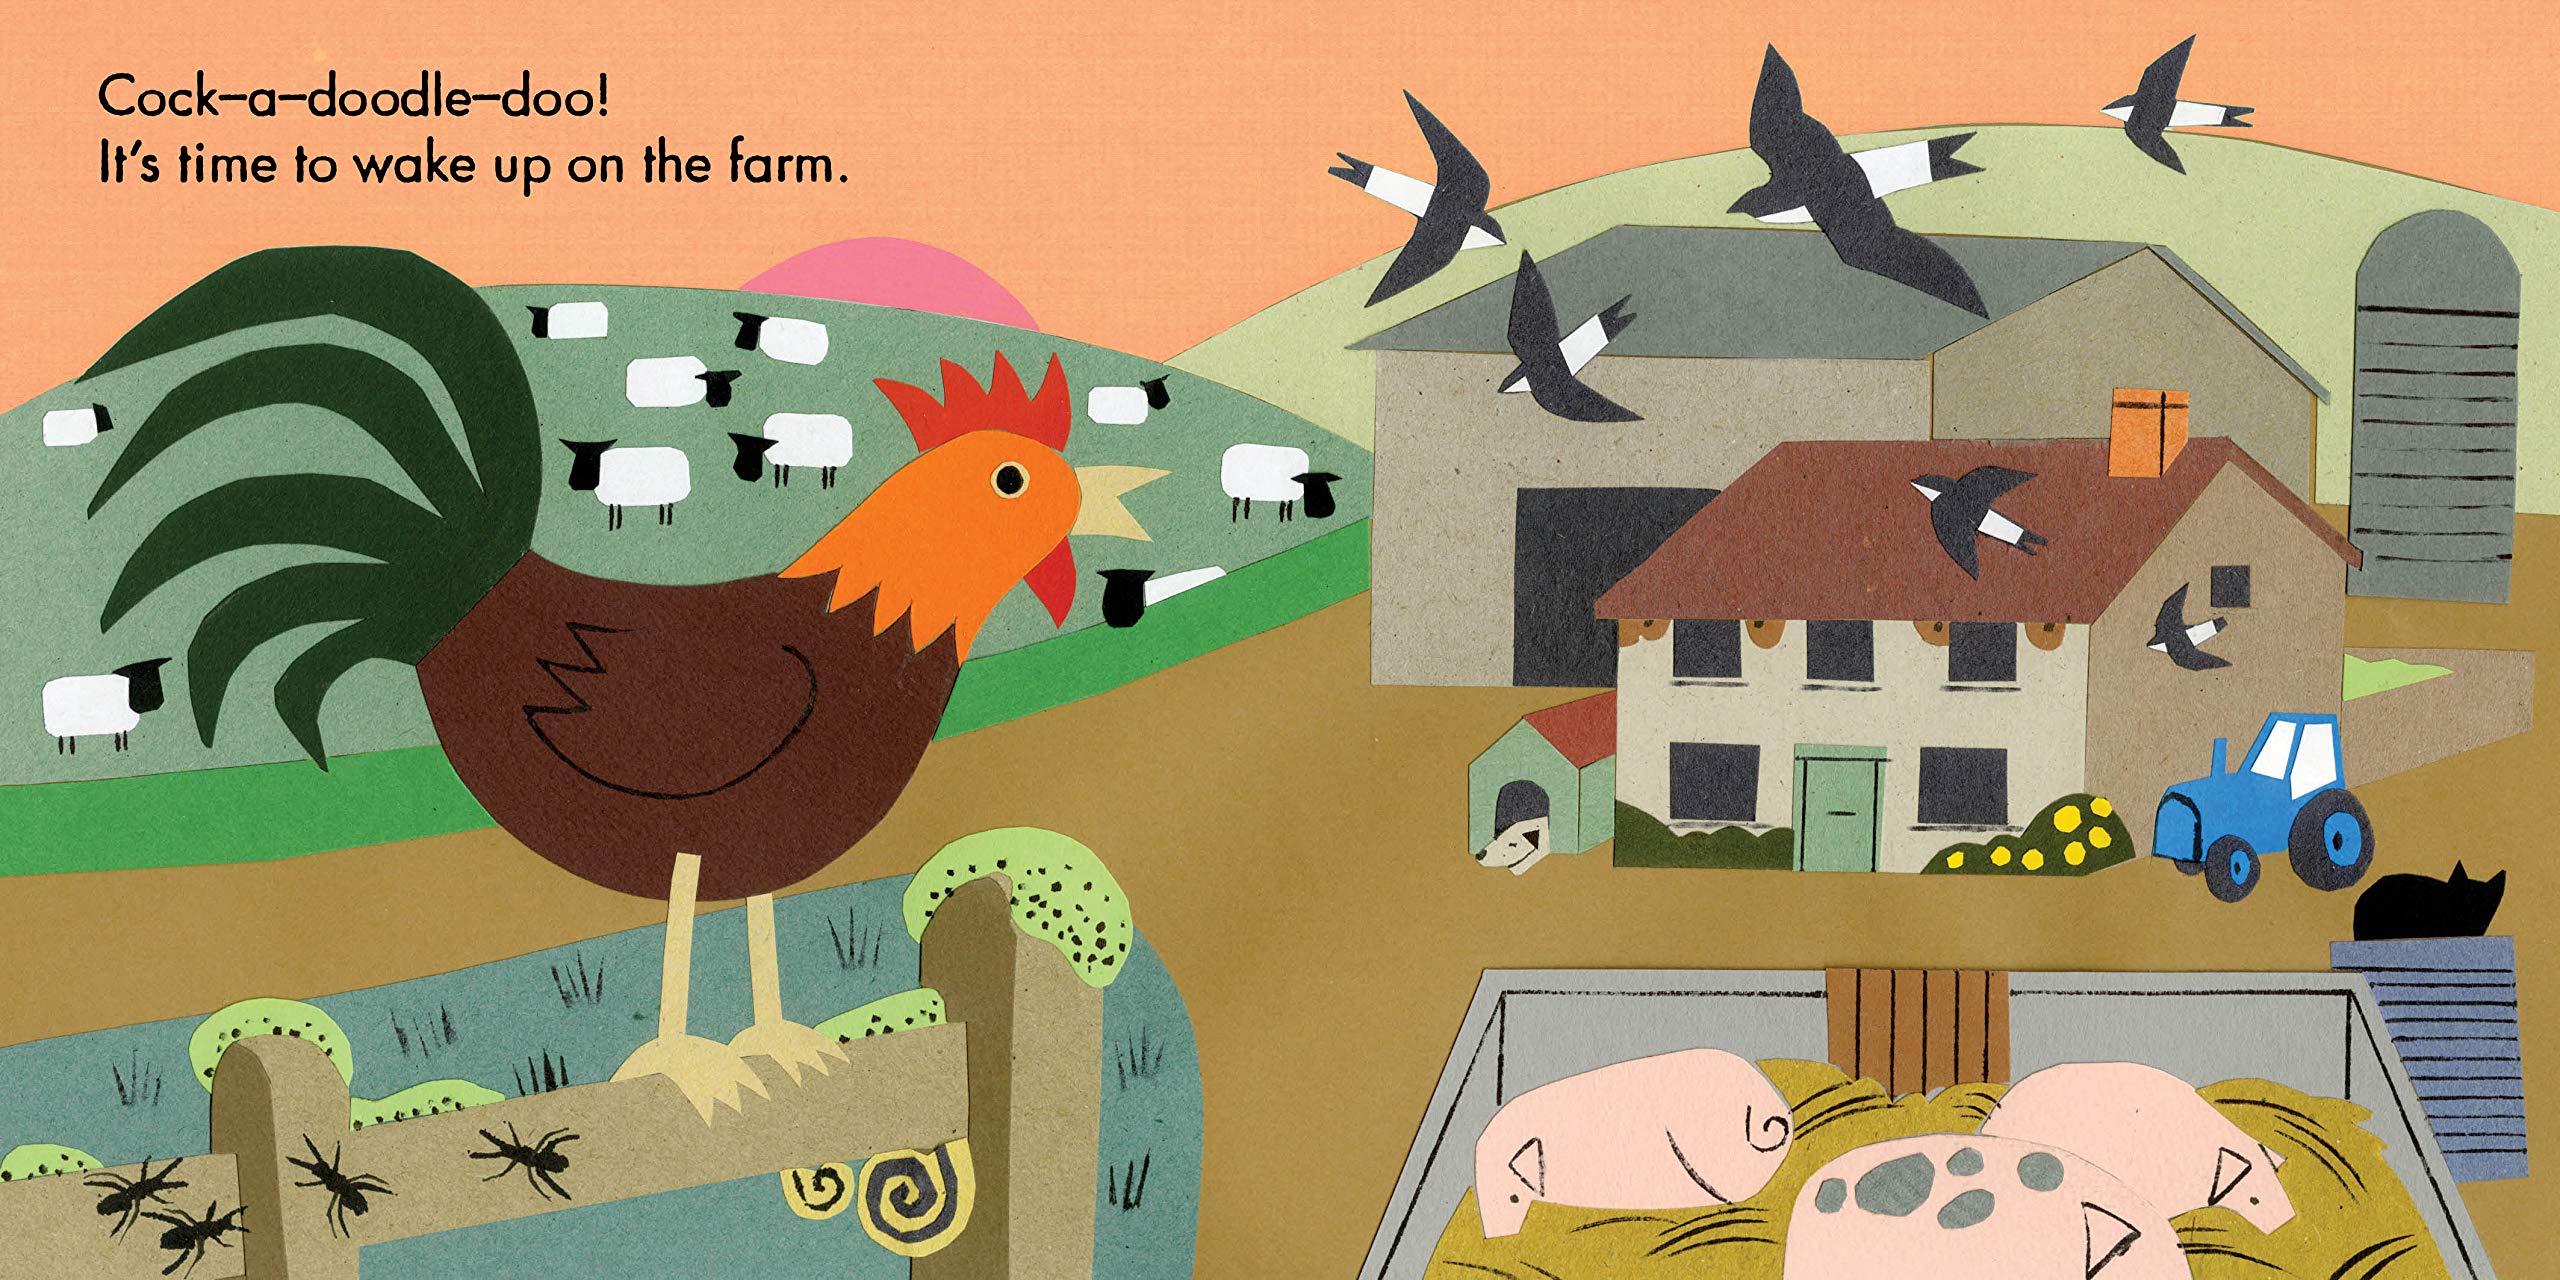 Little Observers: On the Farm (Board Book)